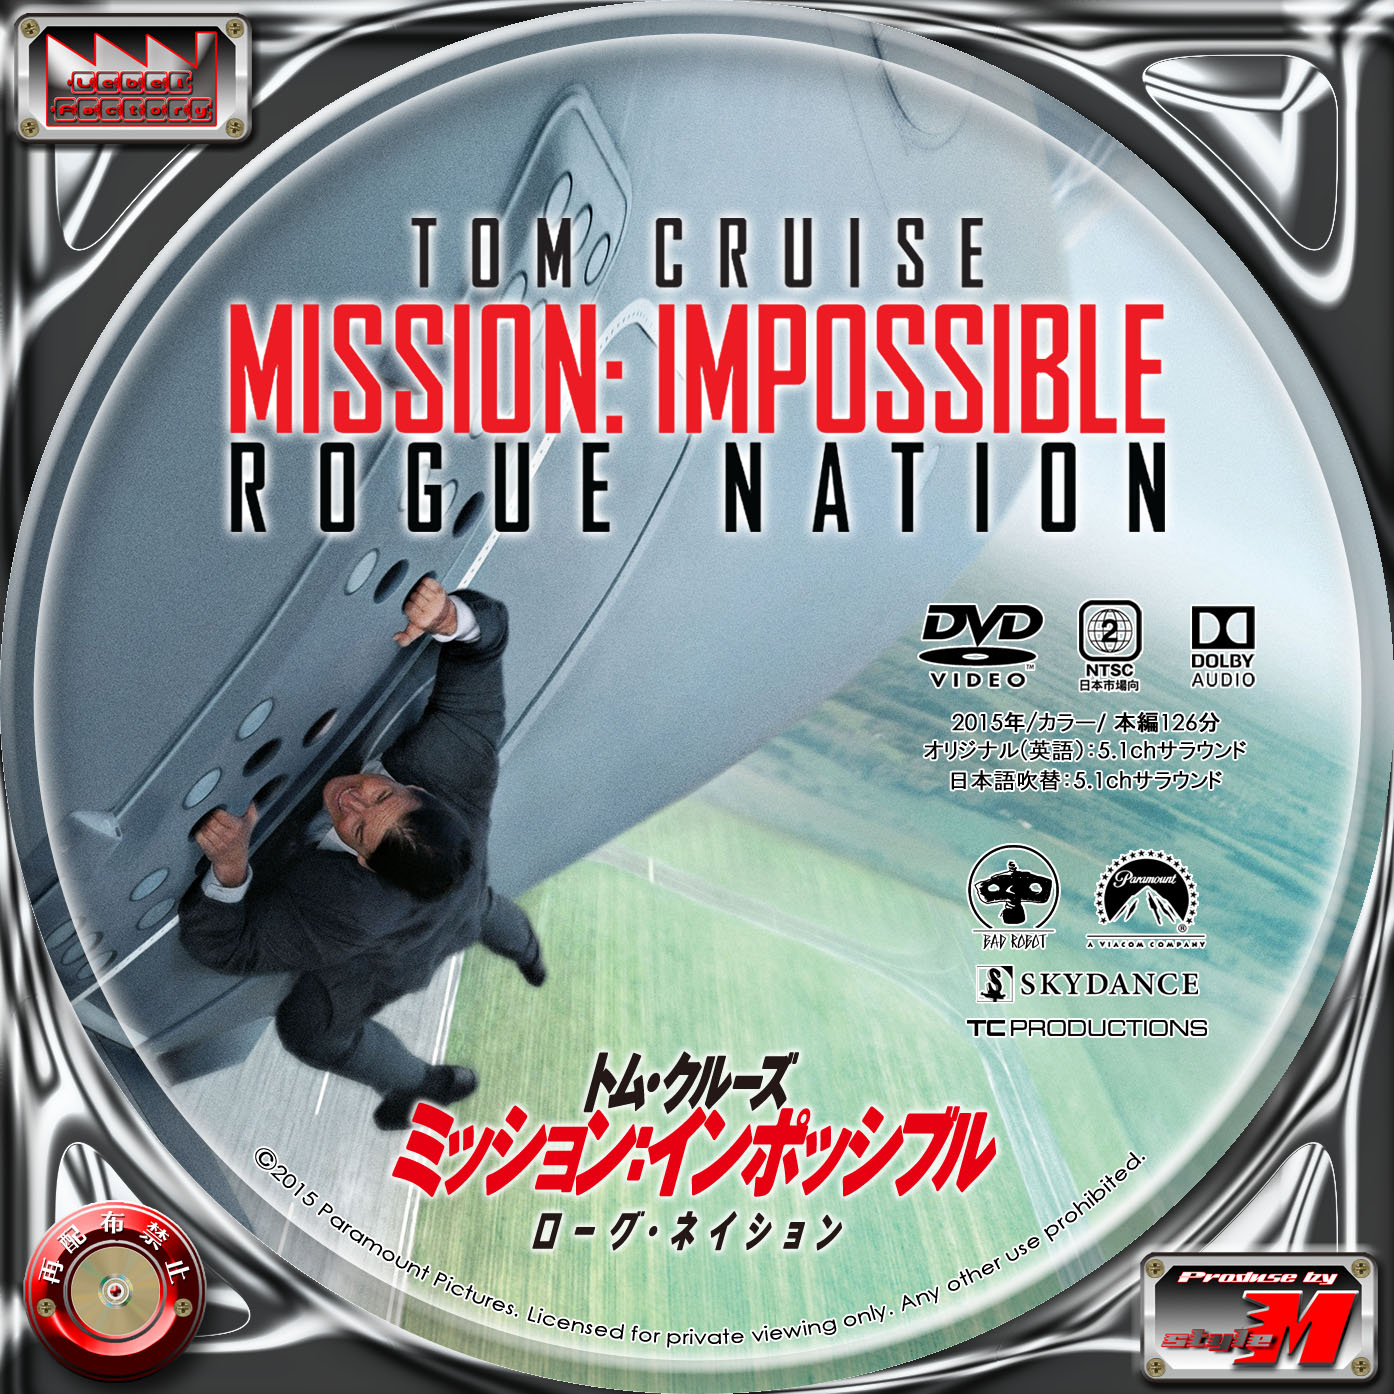 Label Factory M Style 自作dvd レーベル ラベル ミッション インポッシブル ローグネーション Mission Impossible Rogue Nation